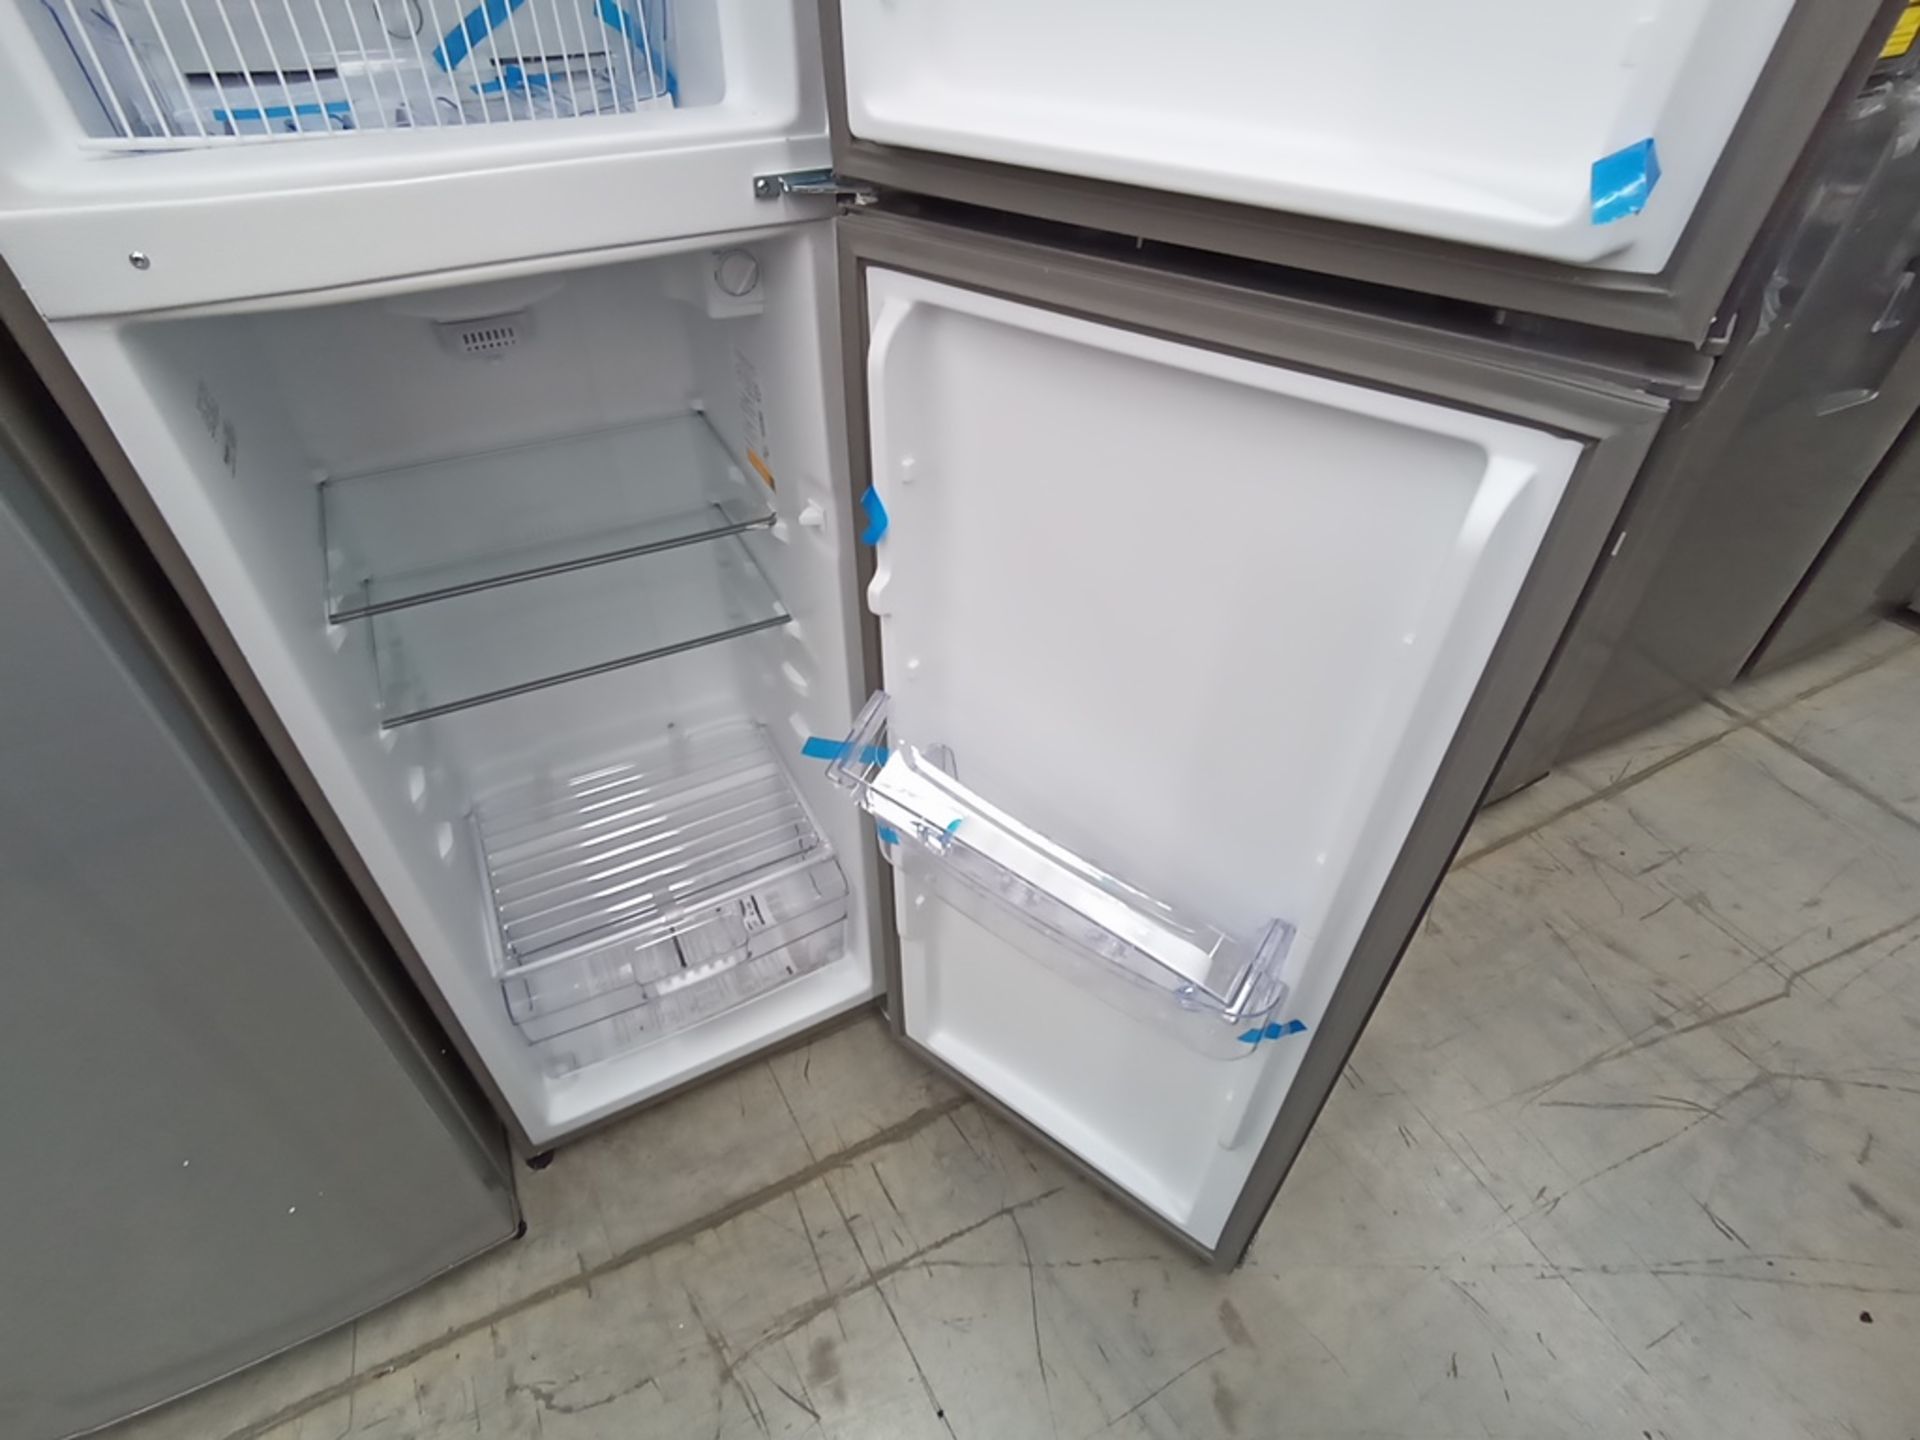 1 Refrigerador Marca Acros, Modelo AT091FG, Serie VRA3383587, Color Gris con Estampado. Golpeado. F - Image 12 of 30